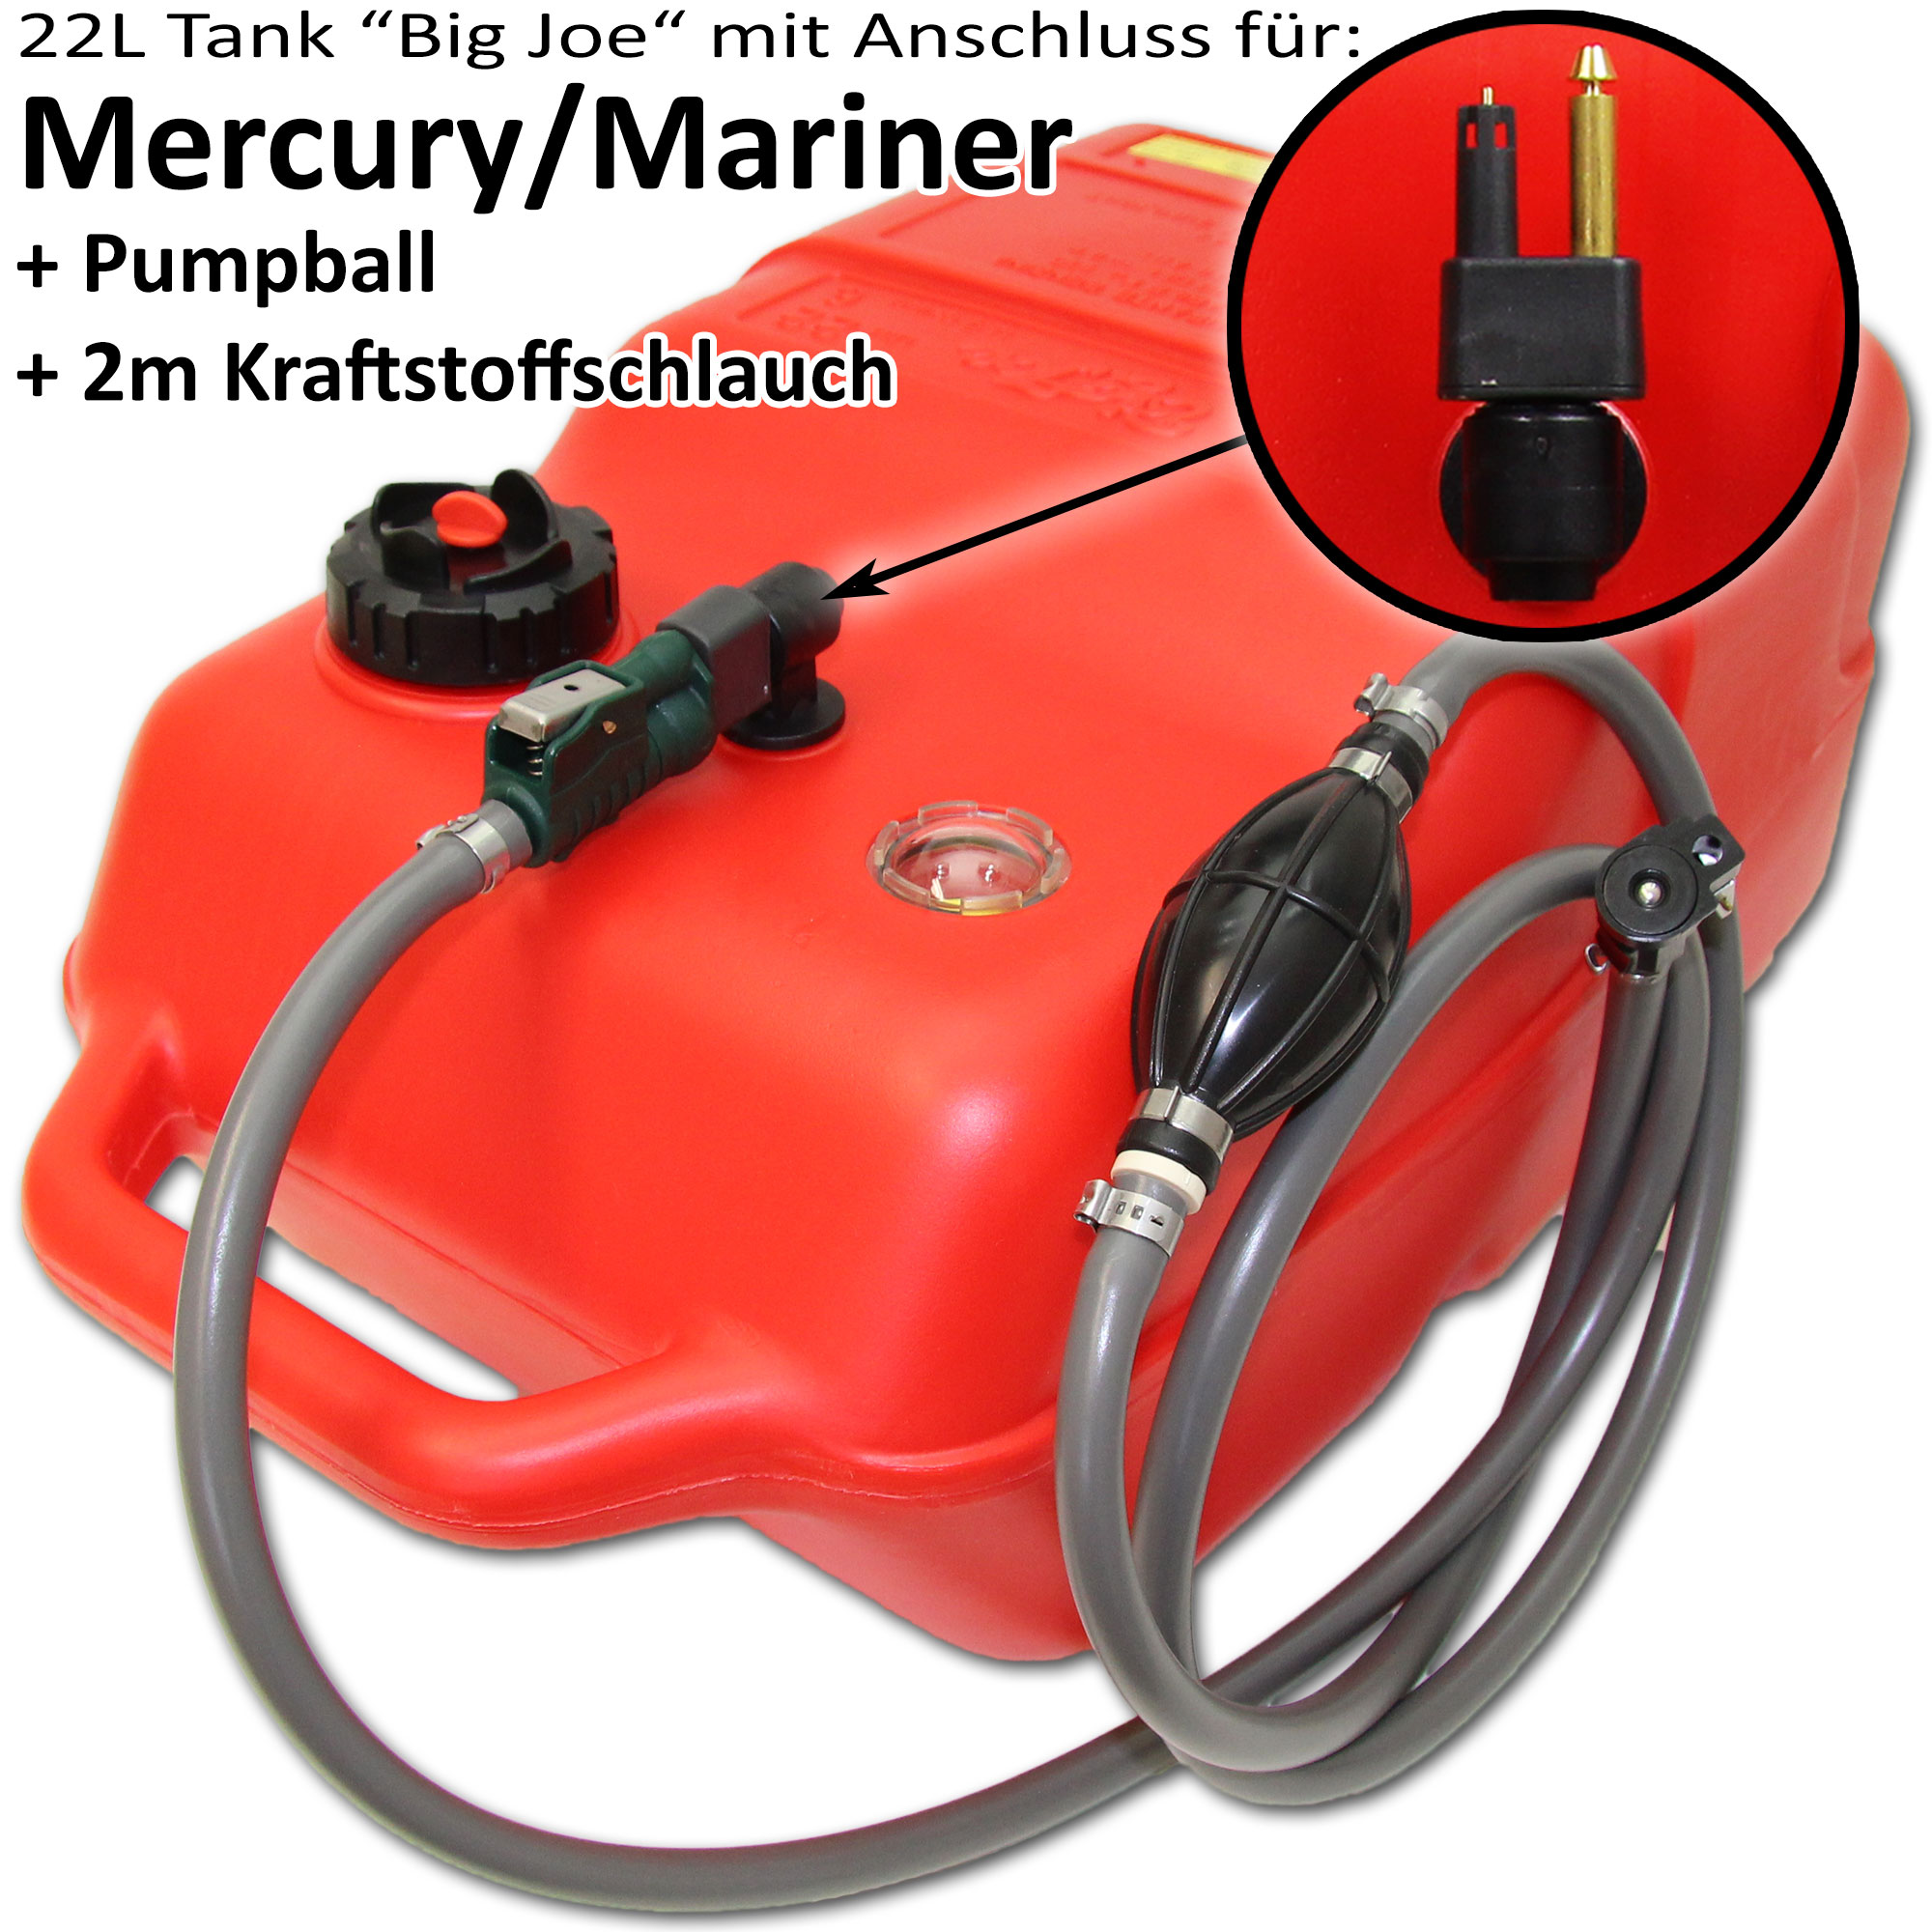 Kraftstofftank rot mit Mercury & Mariner Anschluss / 2m Schlauch / Füllstandsanzeige manuell